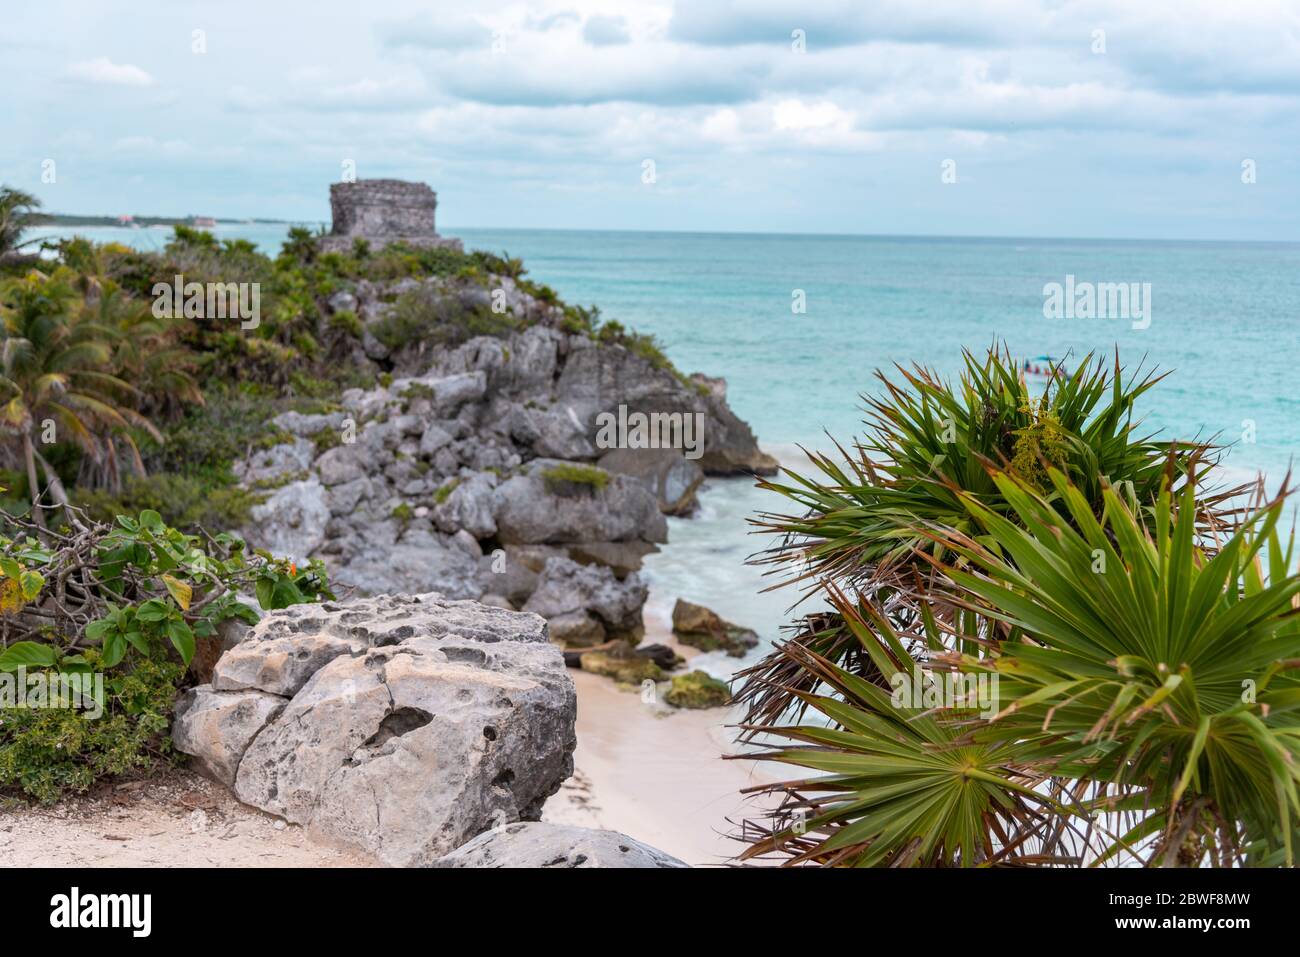 Antica rovina Maya con il mare turchese dei Caraibi del Messico e palme sullo sfondo - Tulum, Messico (viaggio e turismo hotspot) Foto Stock